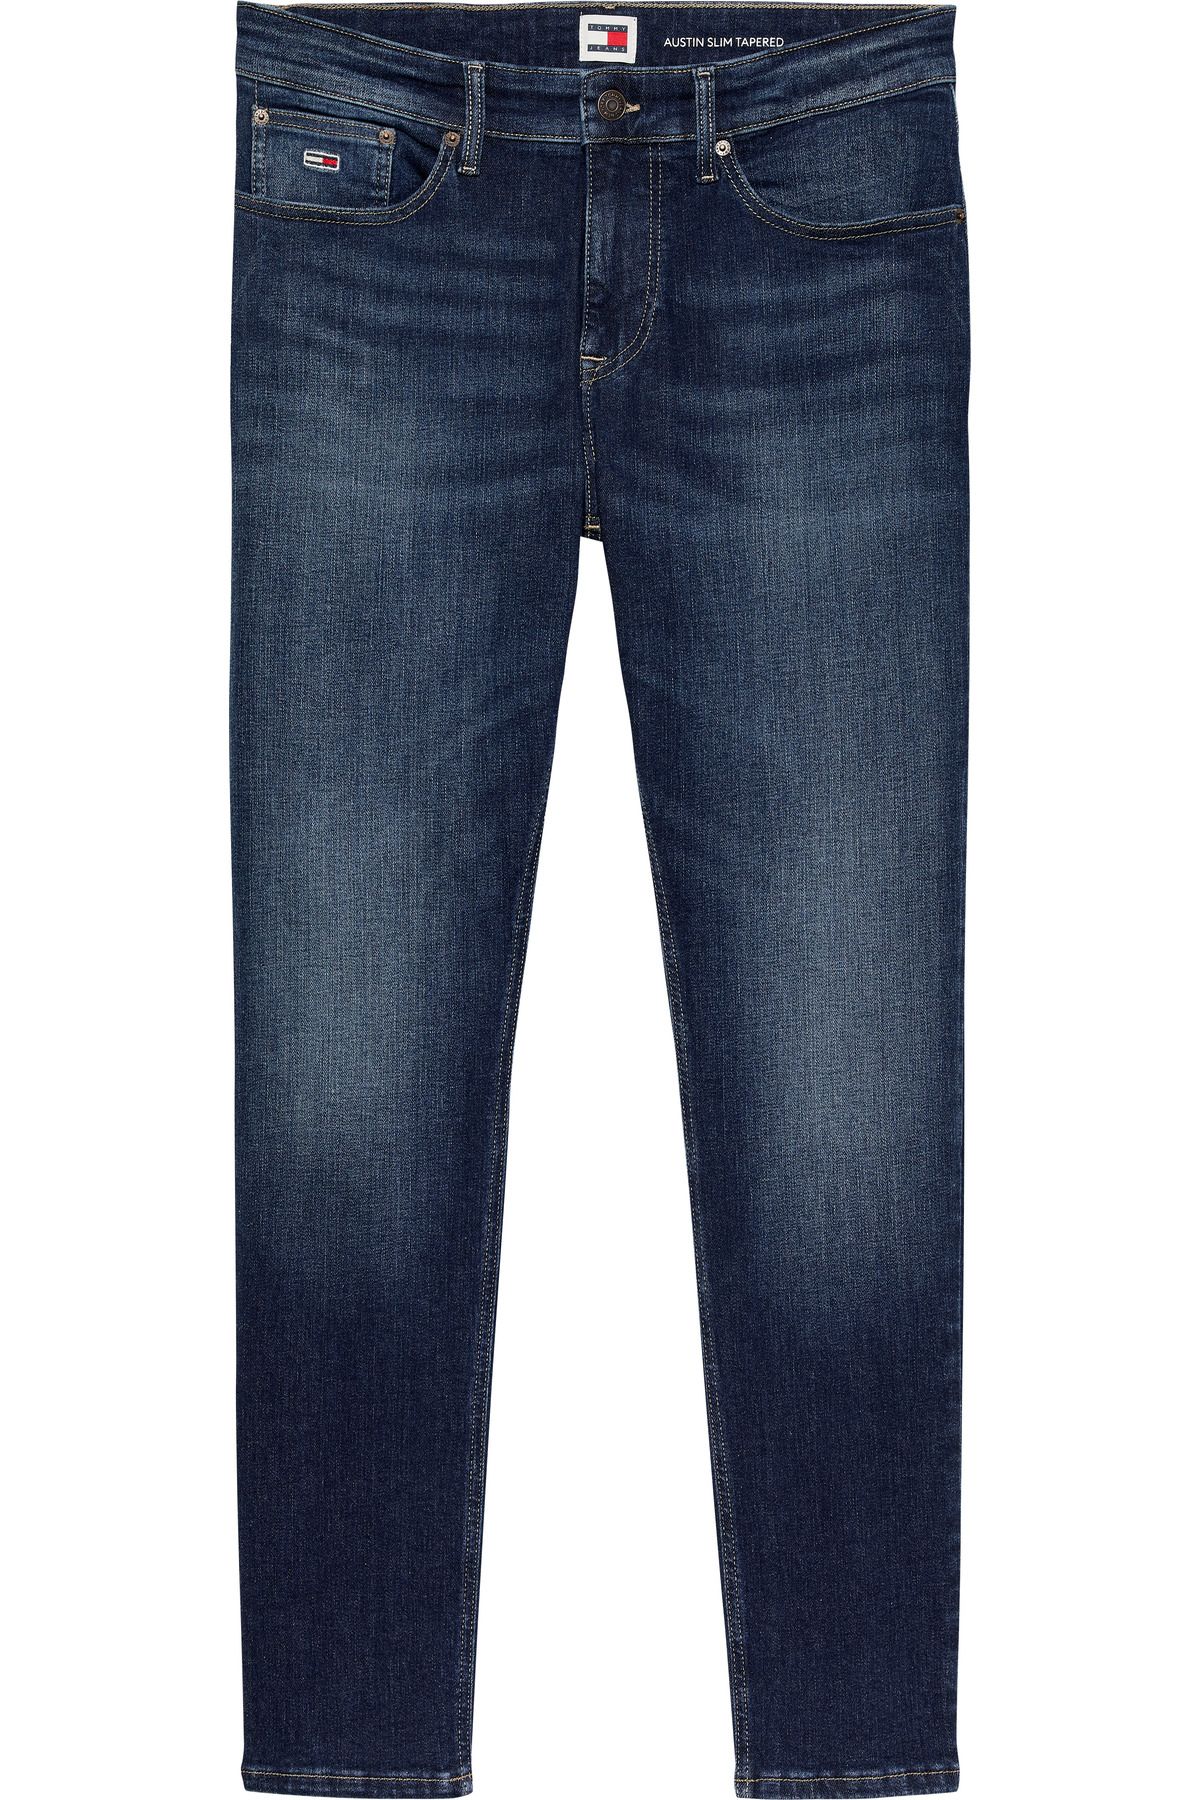 Tommy Hilfiger Erkek Marka Logolu Slim Fit Şık Görünüşlü Klasik 5 Cepli  Günlük Kullanıma Uygun Mavi Denim Jeans DM